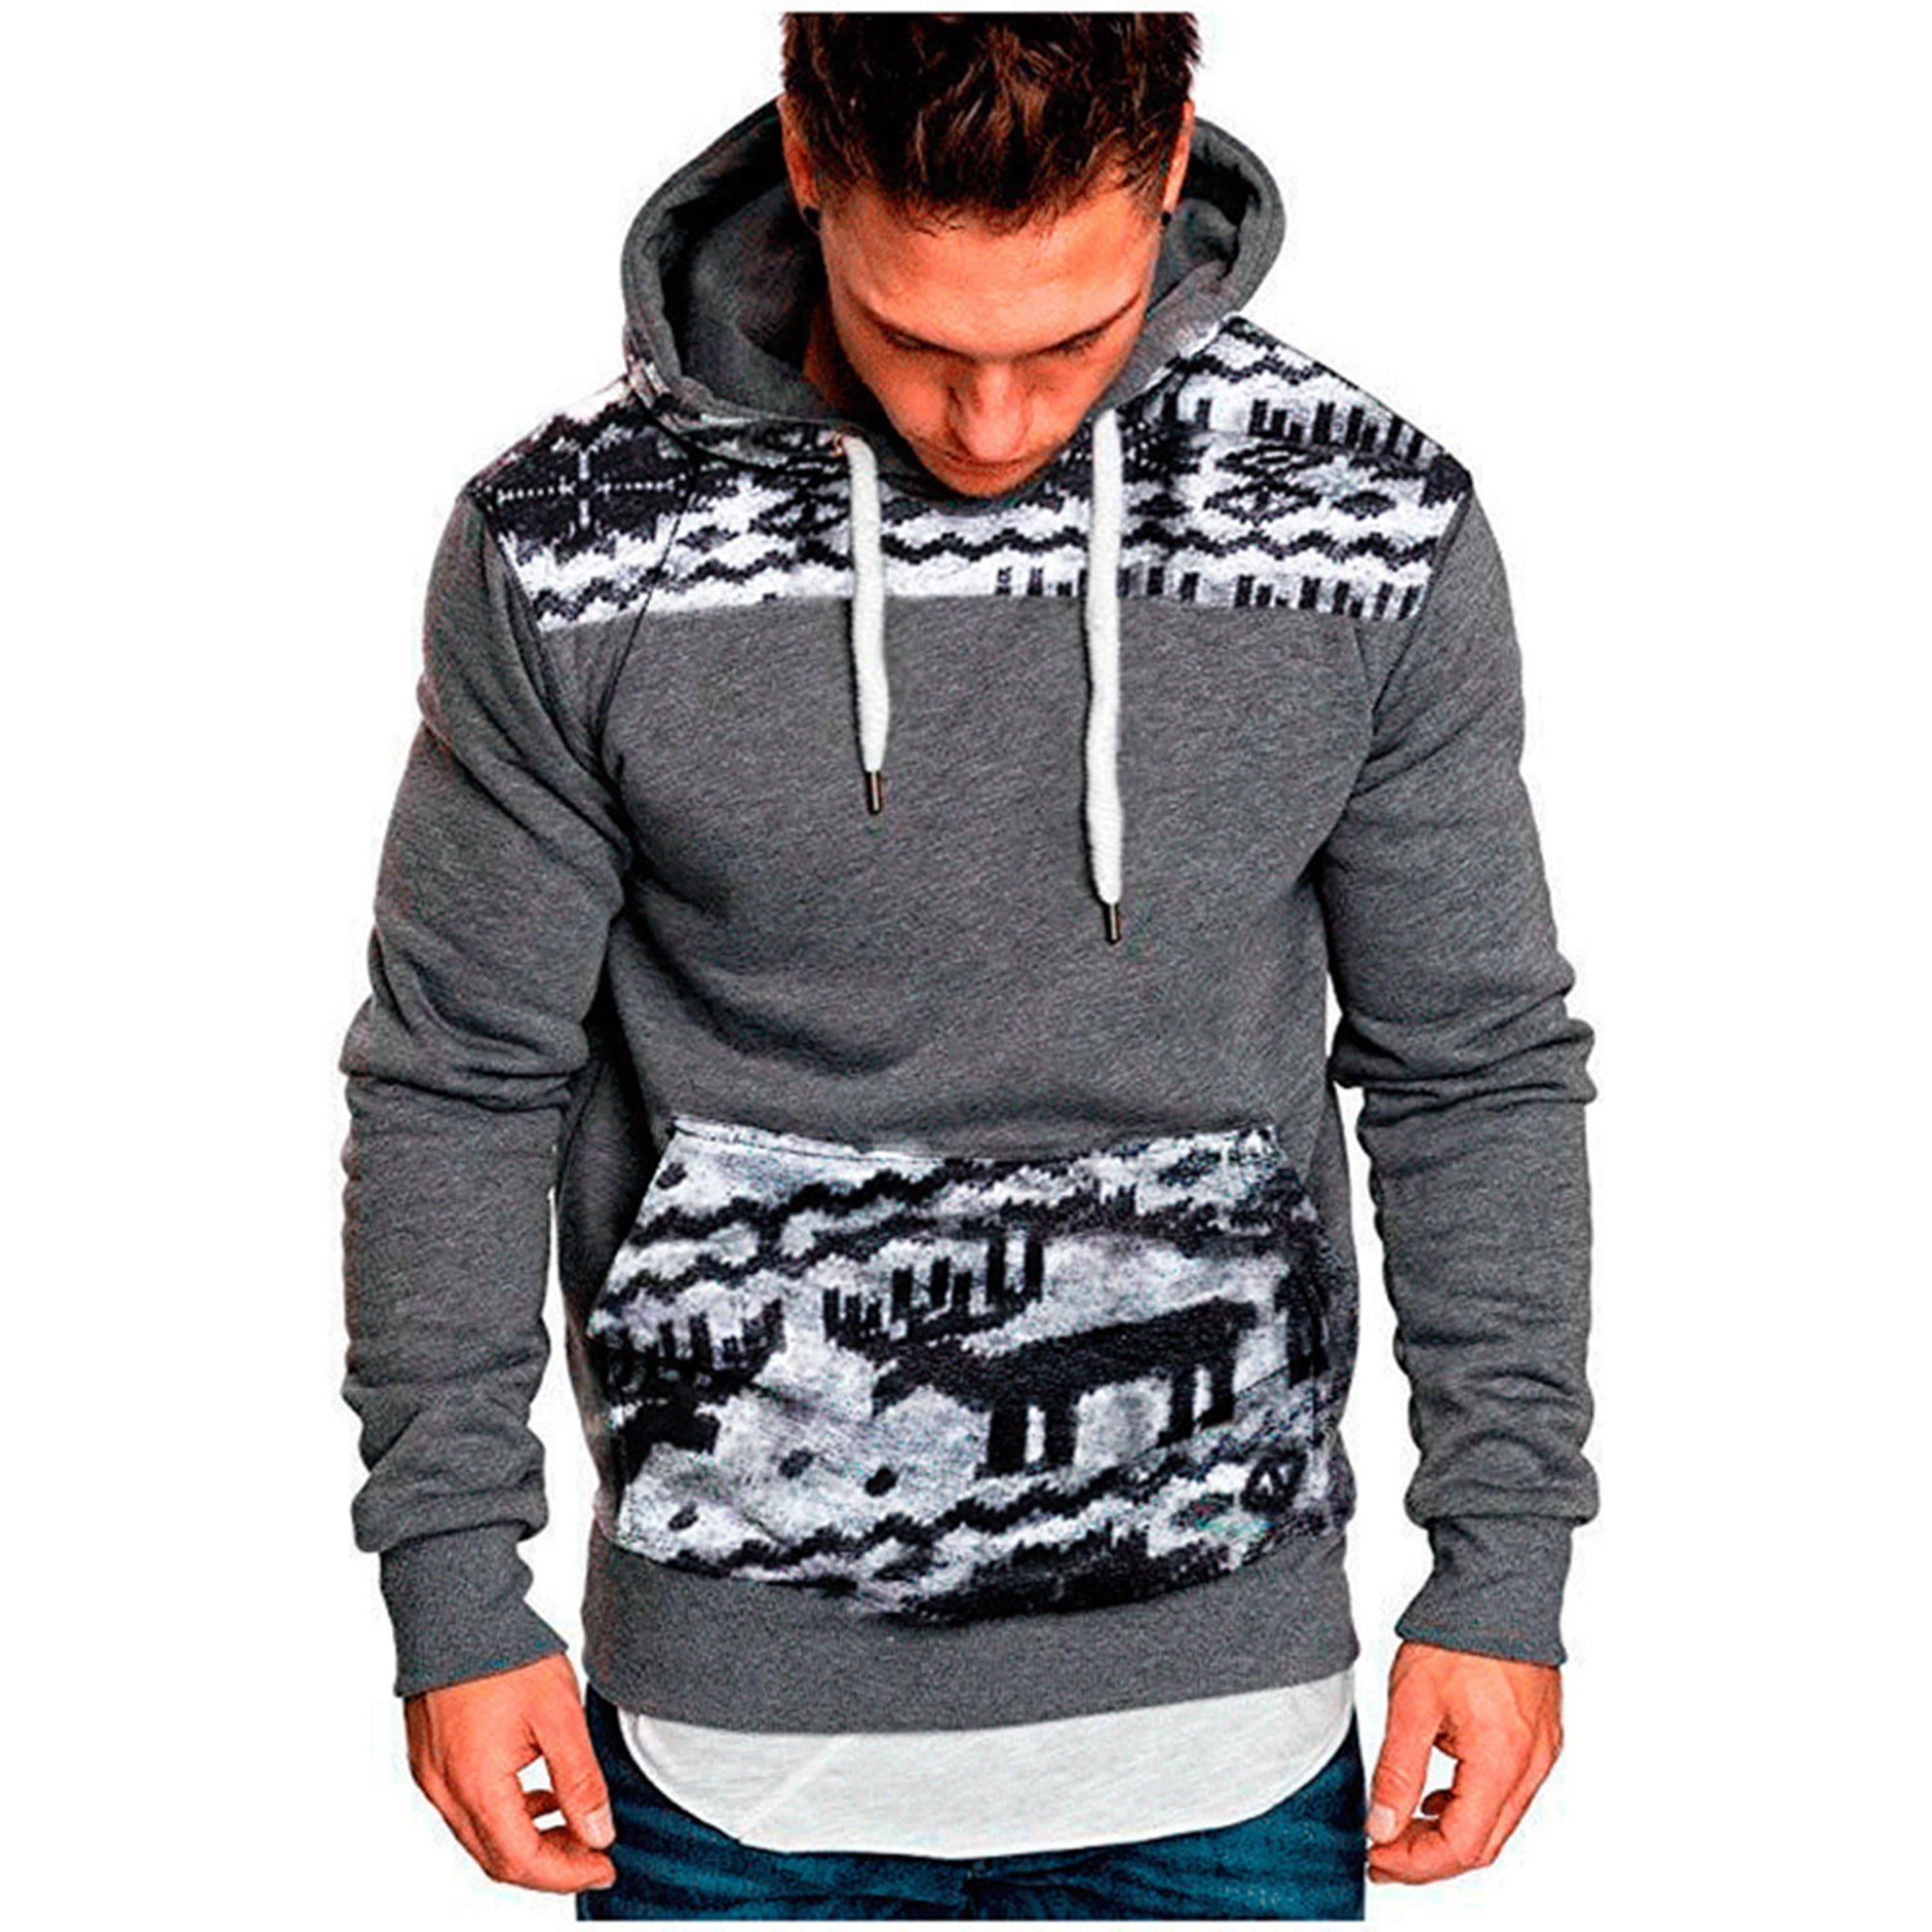 XMAS CHRISTMAS Hoodie Elk 3D Print Sweater Sweatshirt Jacket Coat Pullover Tops 